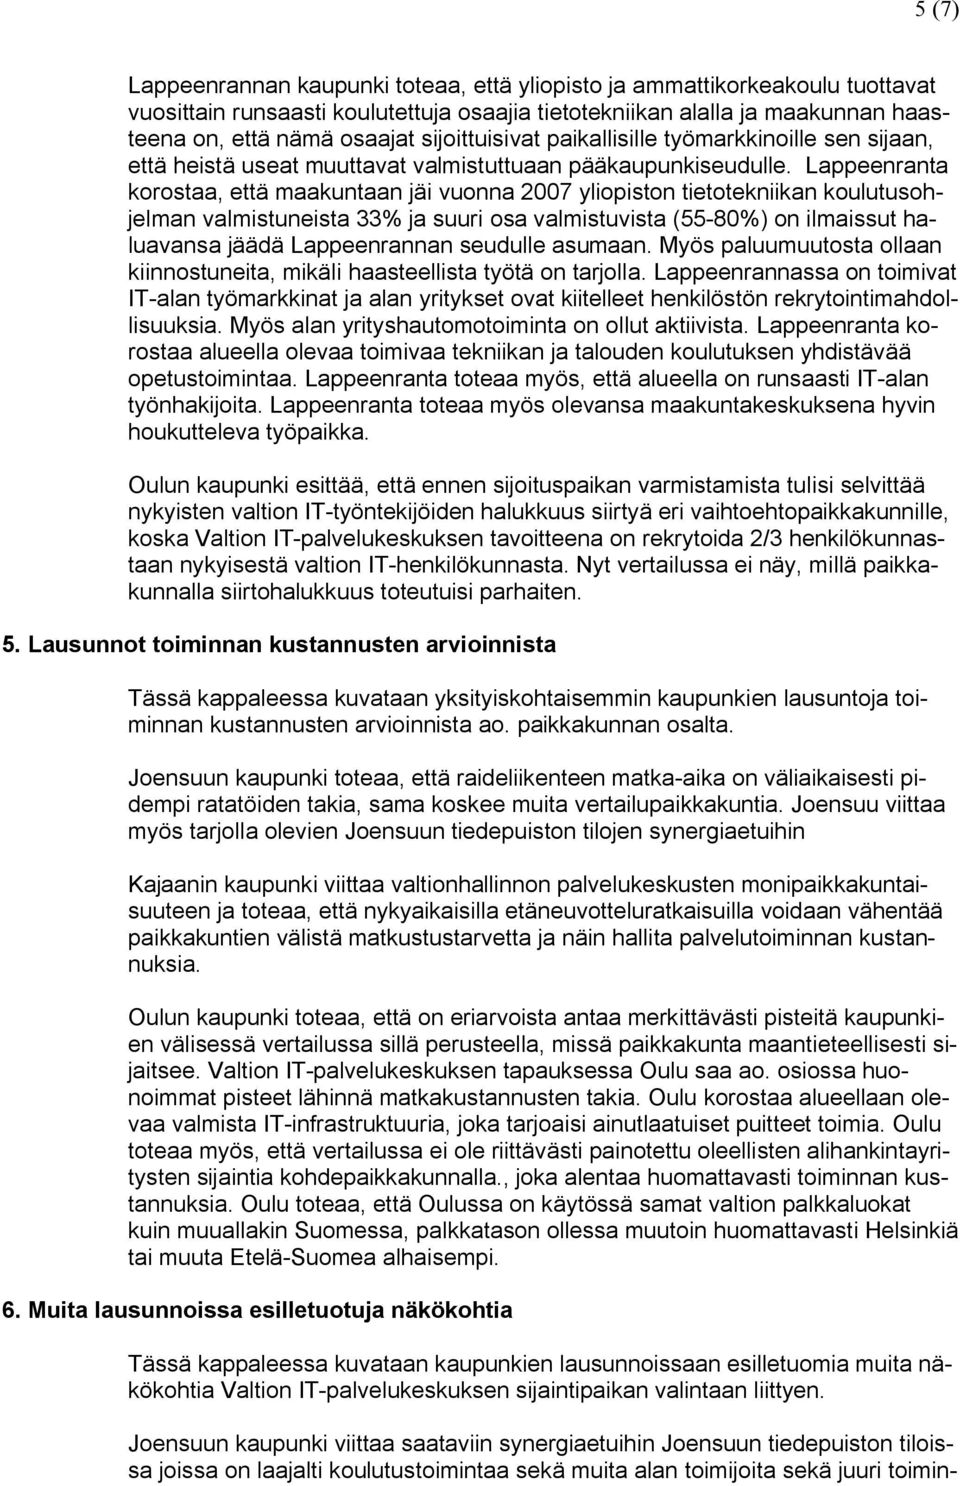 Lappeenranta korostaa, että maakuntaan jäi vuonna 2007 yliopiston tietotekniikan koulutusohjelman valmistuneista 33% ja suuri osa valmistuvista (55-80%) on ilmaissut haluavansa jäädä Lappeenrannan